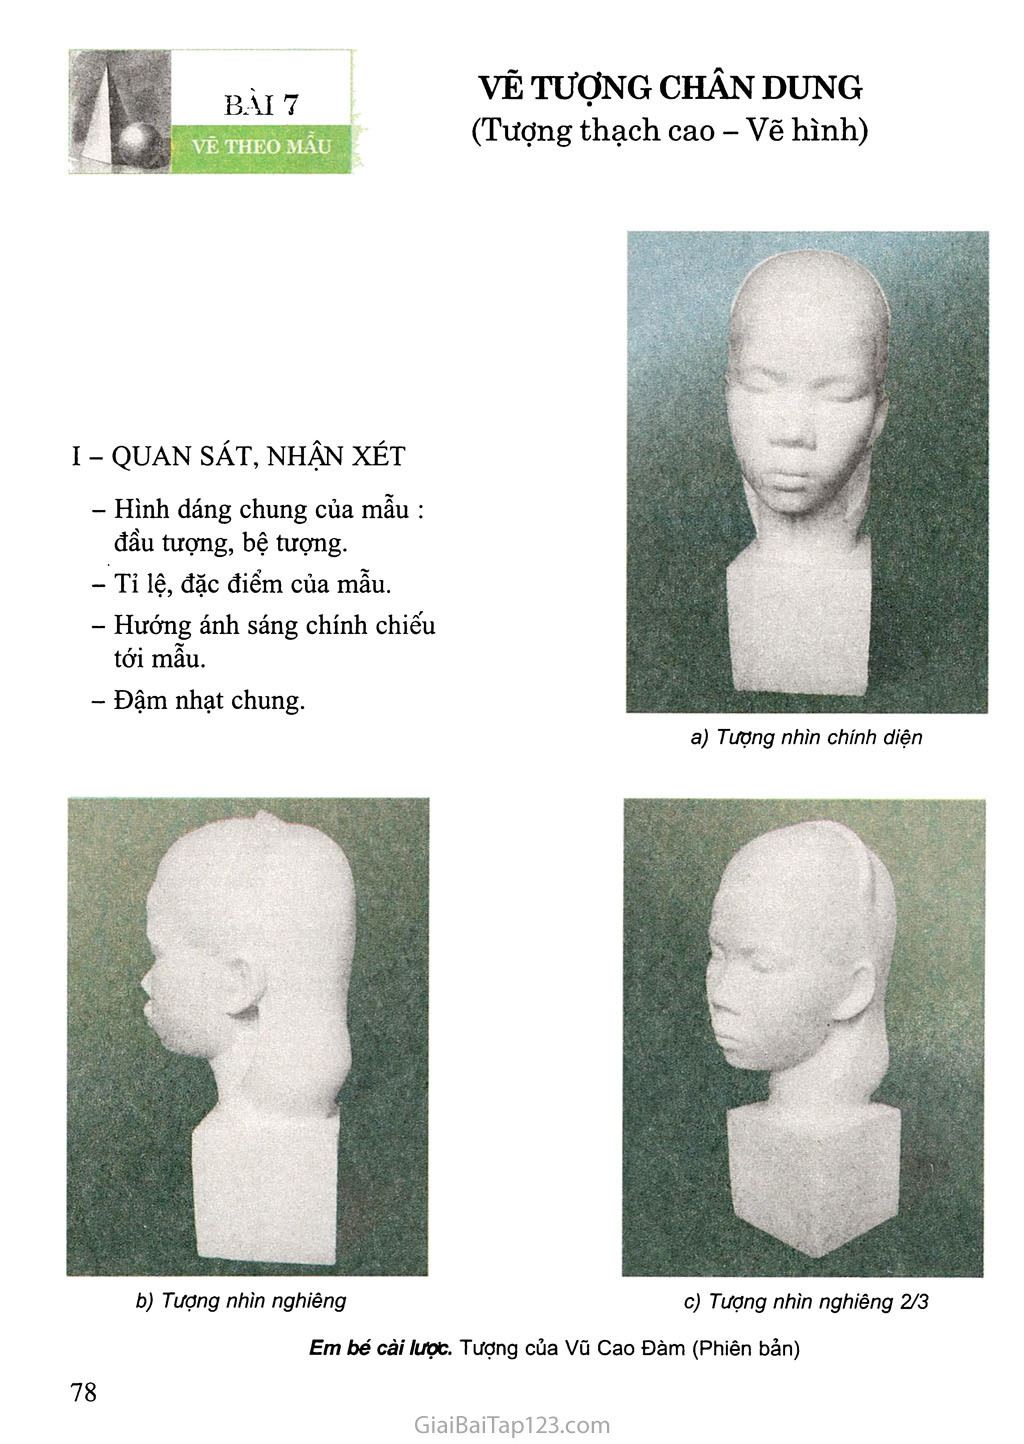 Bài 7. Vẽ theo mẫu Vẽ tượng chân dung (Tượng thạch cao - Vẽ hình) trang 1